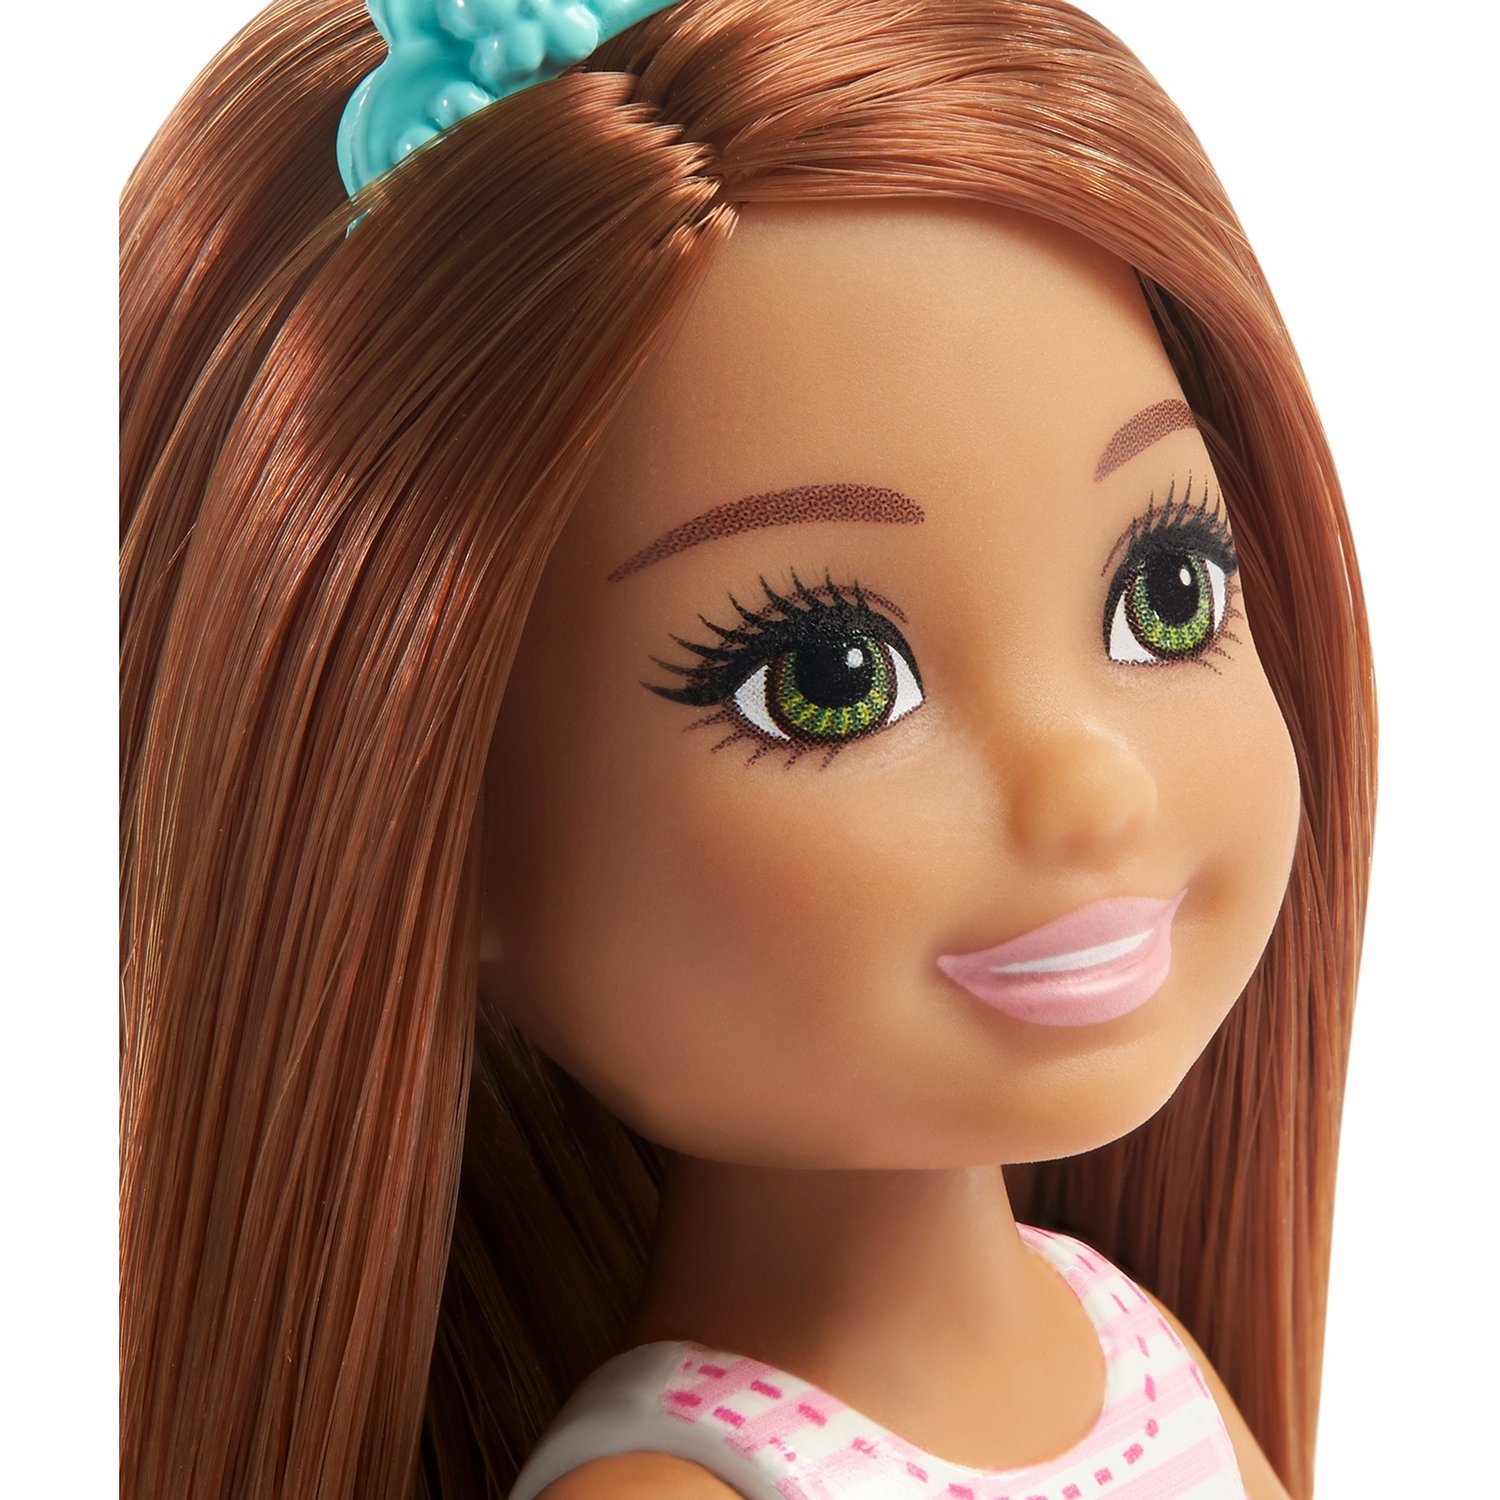 Набор Barbie GML74 Приключения принцессы Челси